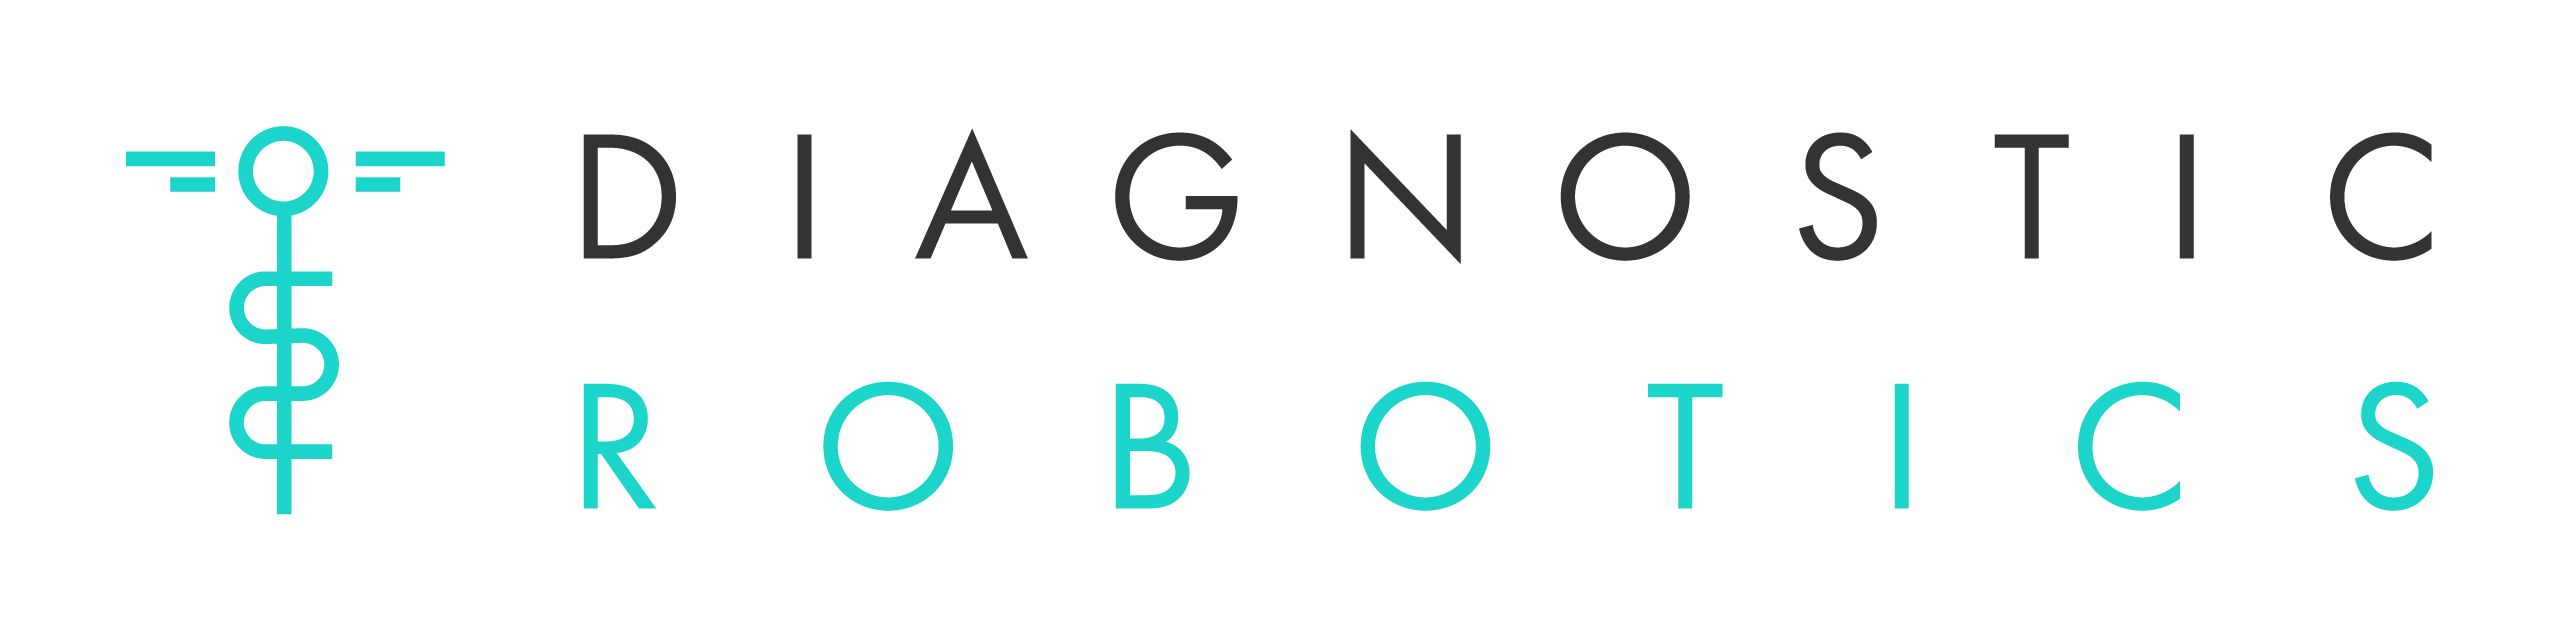 Diagnostic Robotics Logo